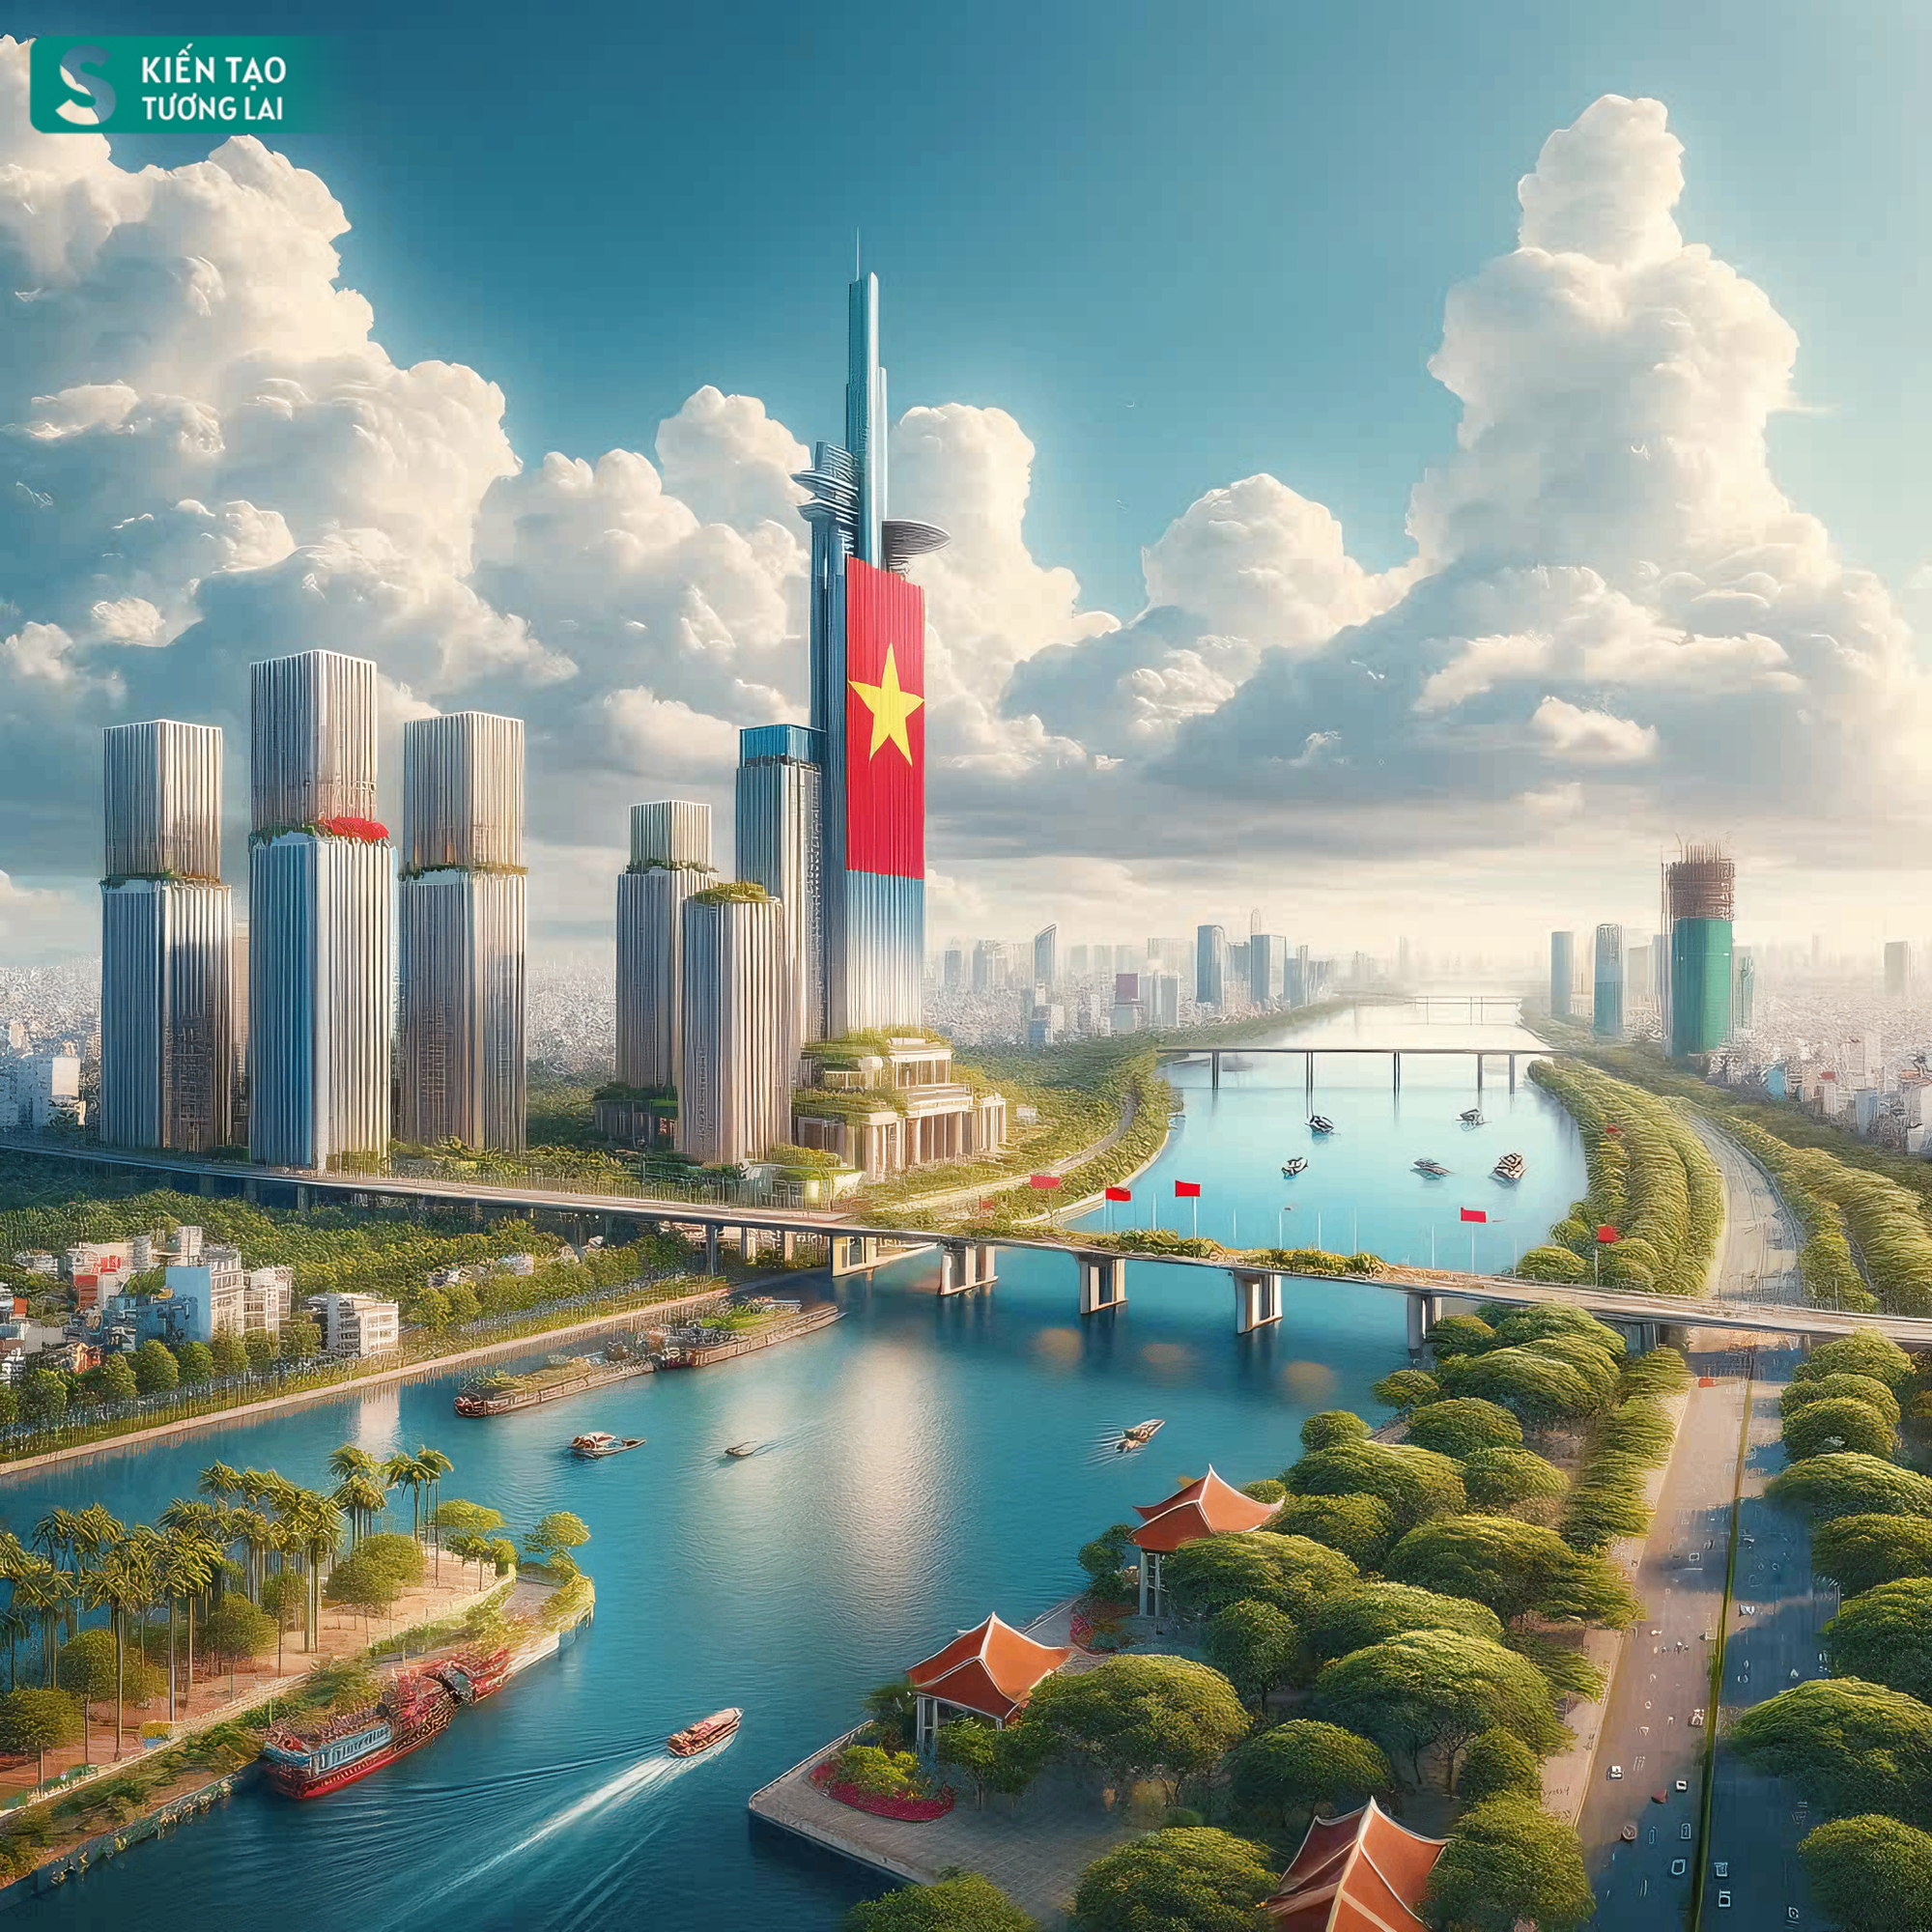 Ngắm TP ven sông Hồng đẹp ngoạn mục trong tương lai ở Hà Nội - sánh ngang với Seoul, Thượng Hải?- Ảnh 12.